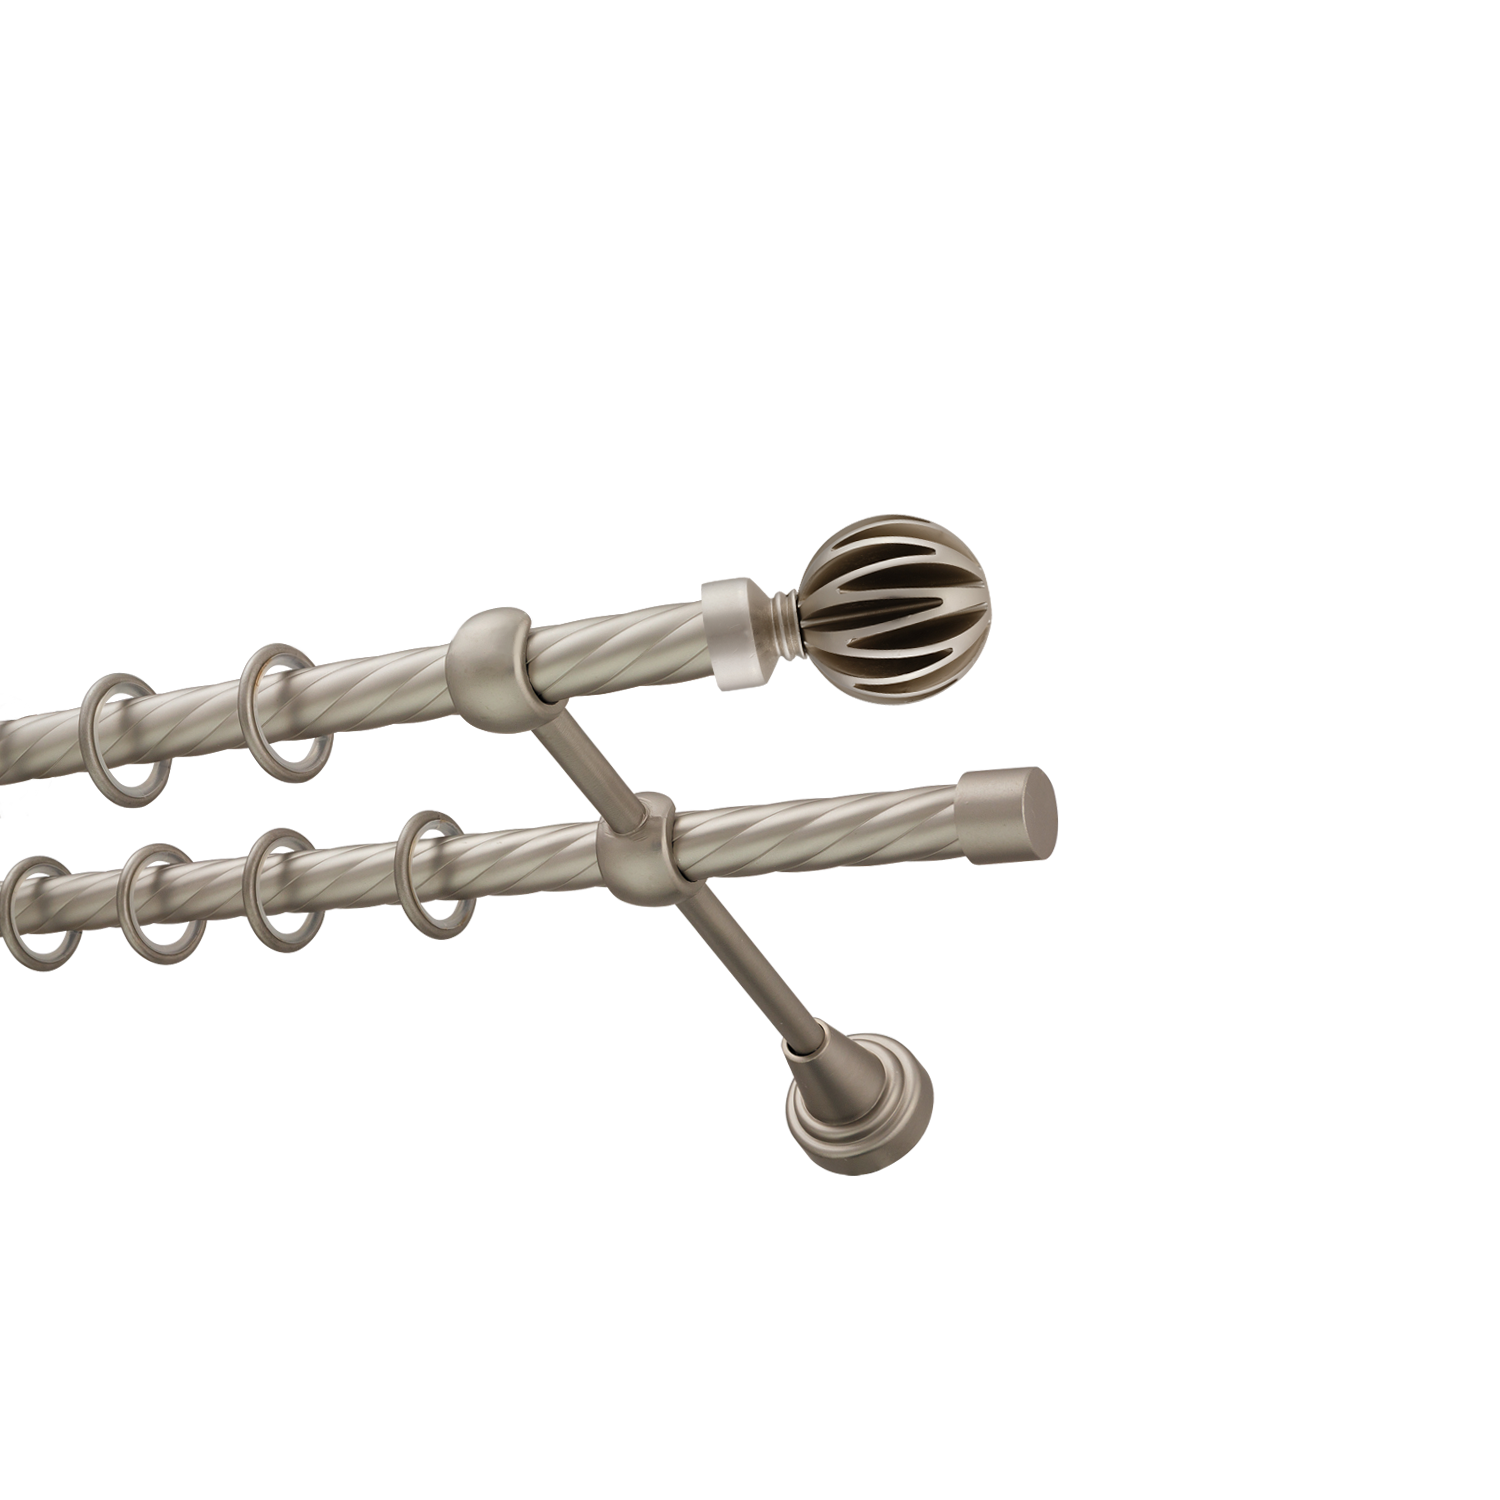 Металлический карниз для штор Шафран, двухрядный 16/16 мм, сталь, витая штанга, длина 180 см - фото Wikidecor.ru